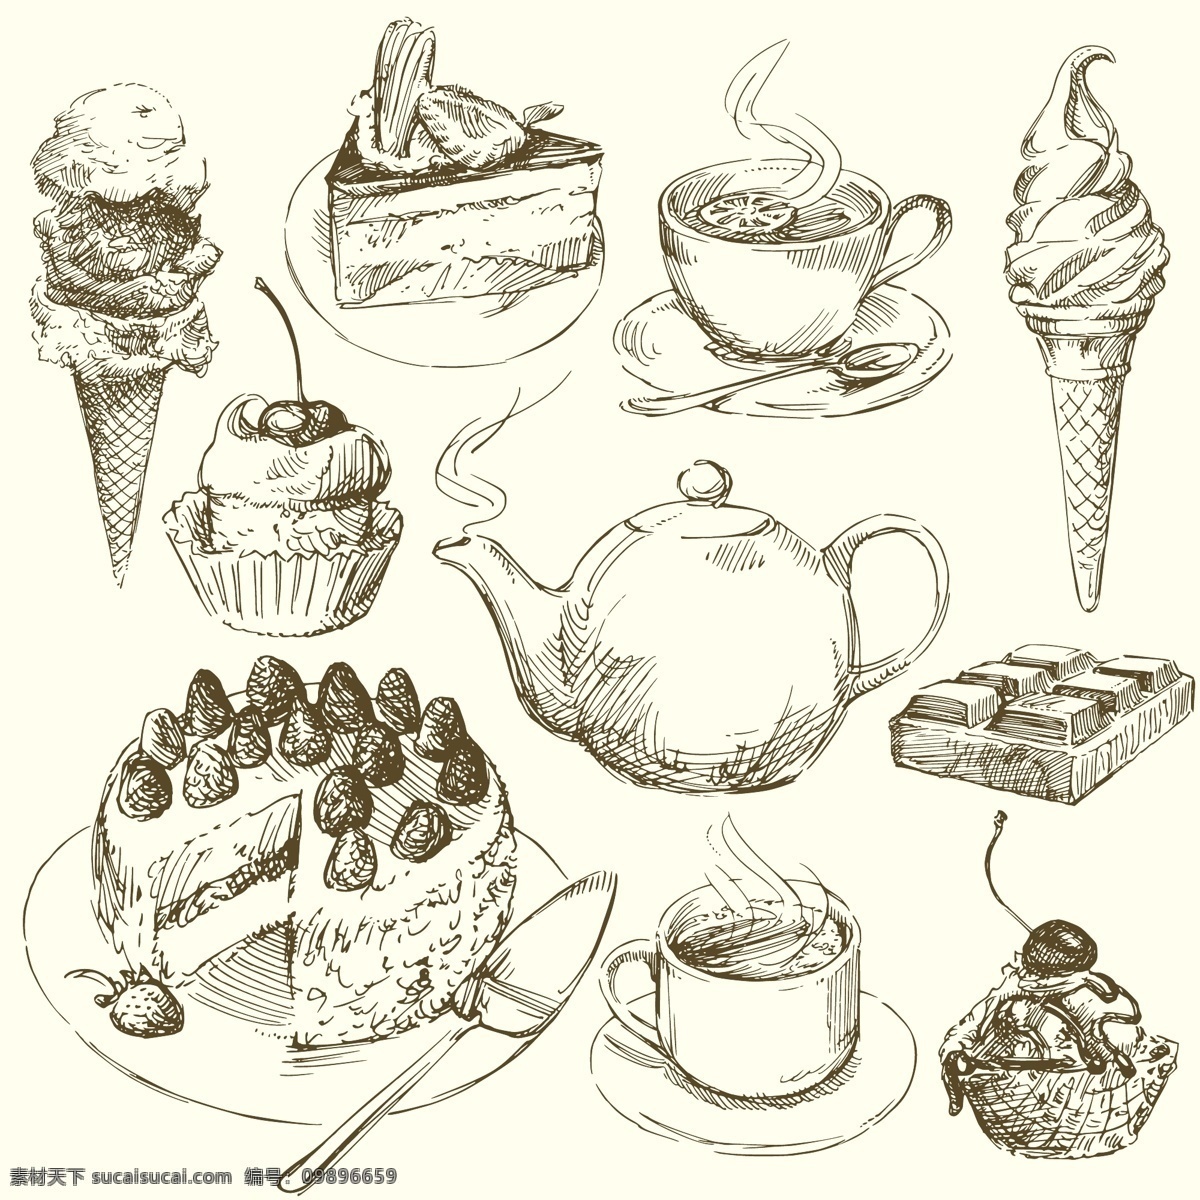 冰激淋 餐饮美食 插画 蛋糕 咖啡 奶酪 巧克力 生活百科 食物 手绘 矢量 模板下载 手绘食物 线稿 速写 素描 矢量素材 插画集